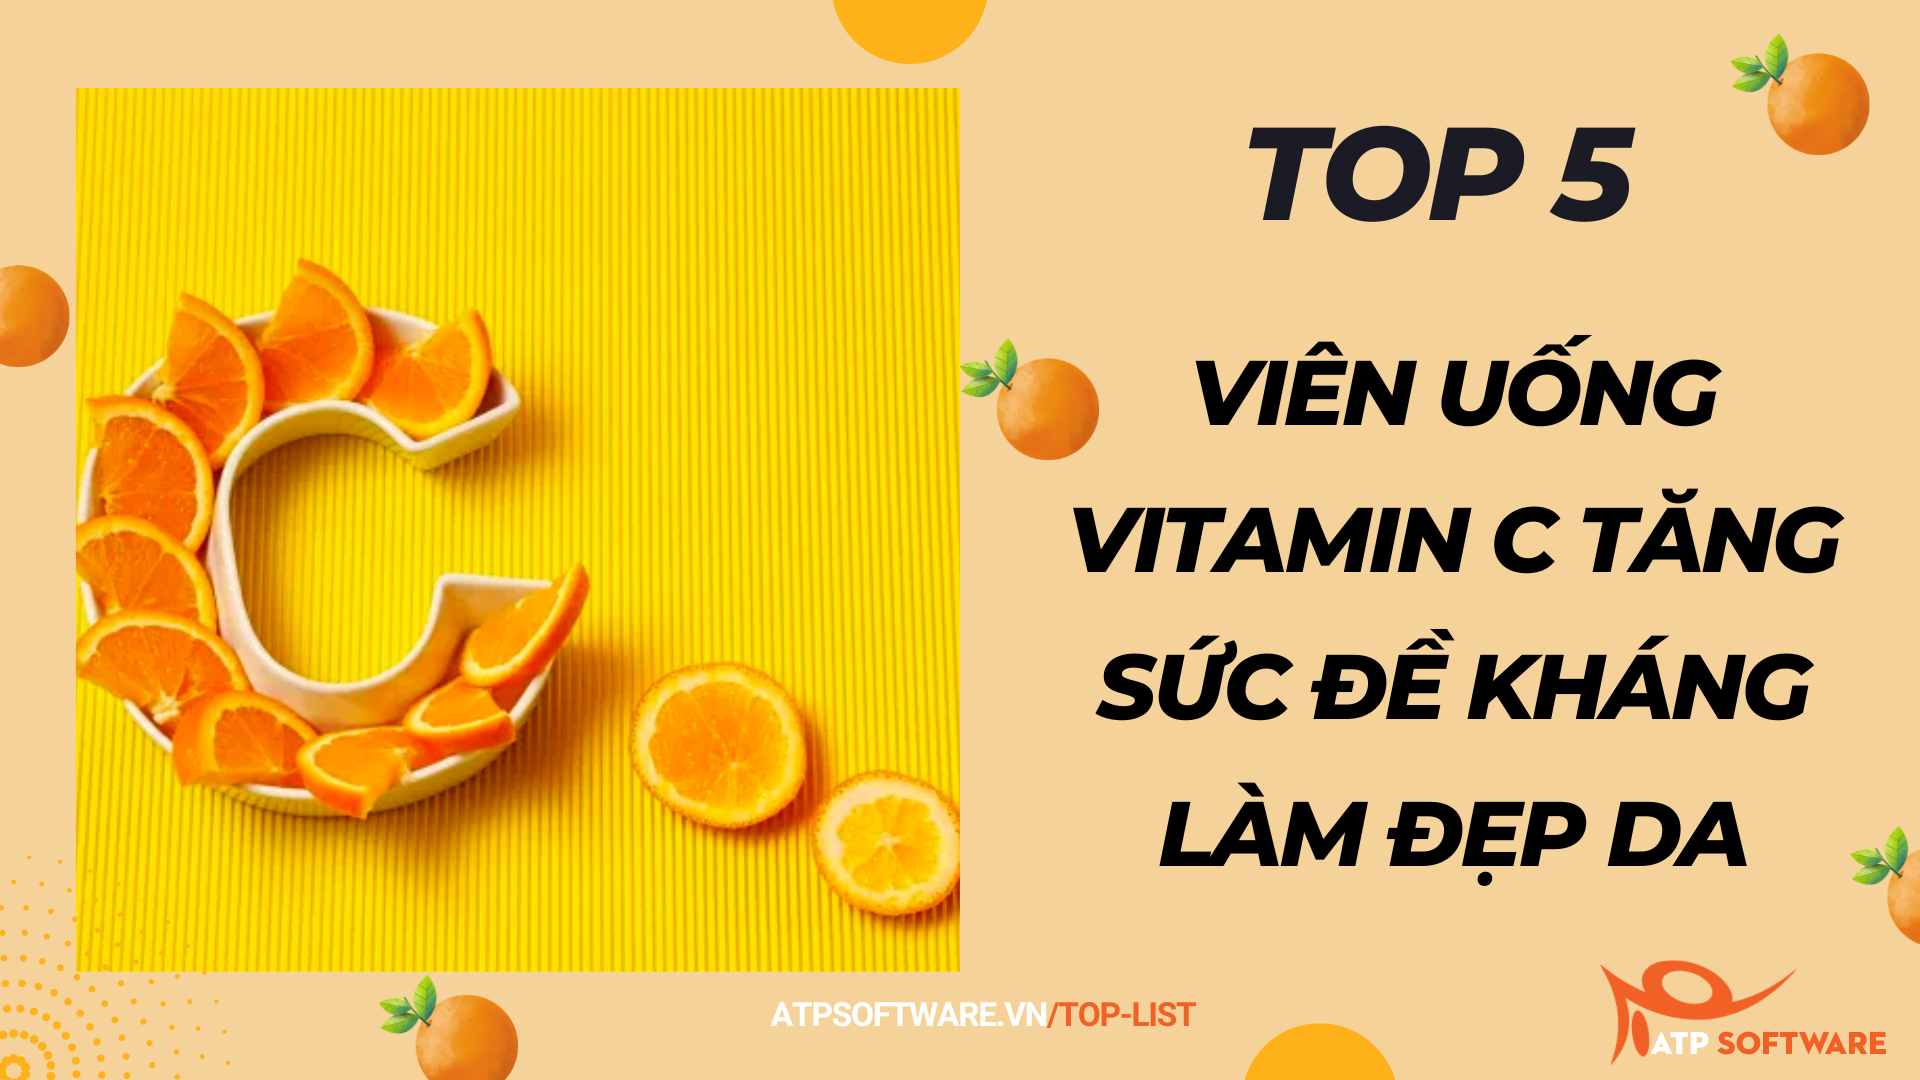 viên uống Vitamin C tăng sức đề kháng làm đẹp da